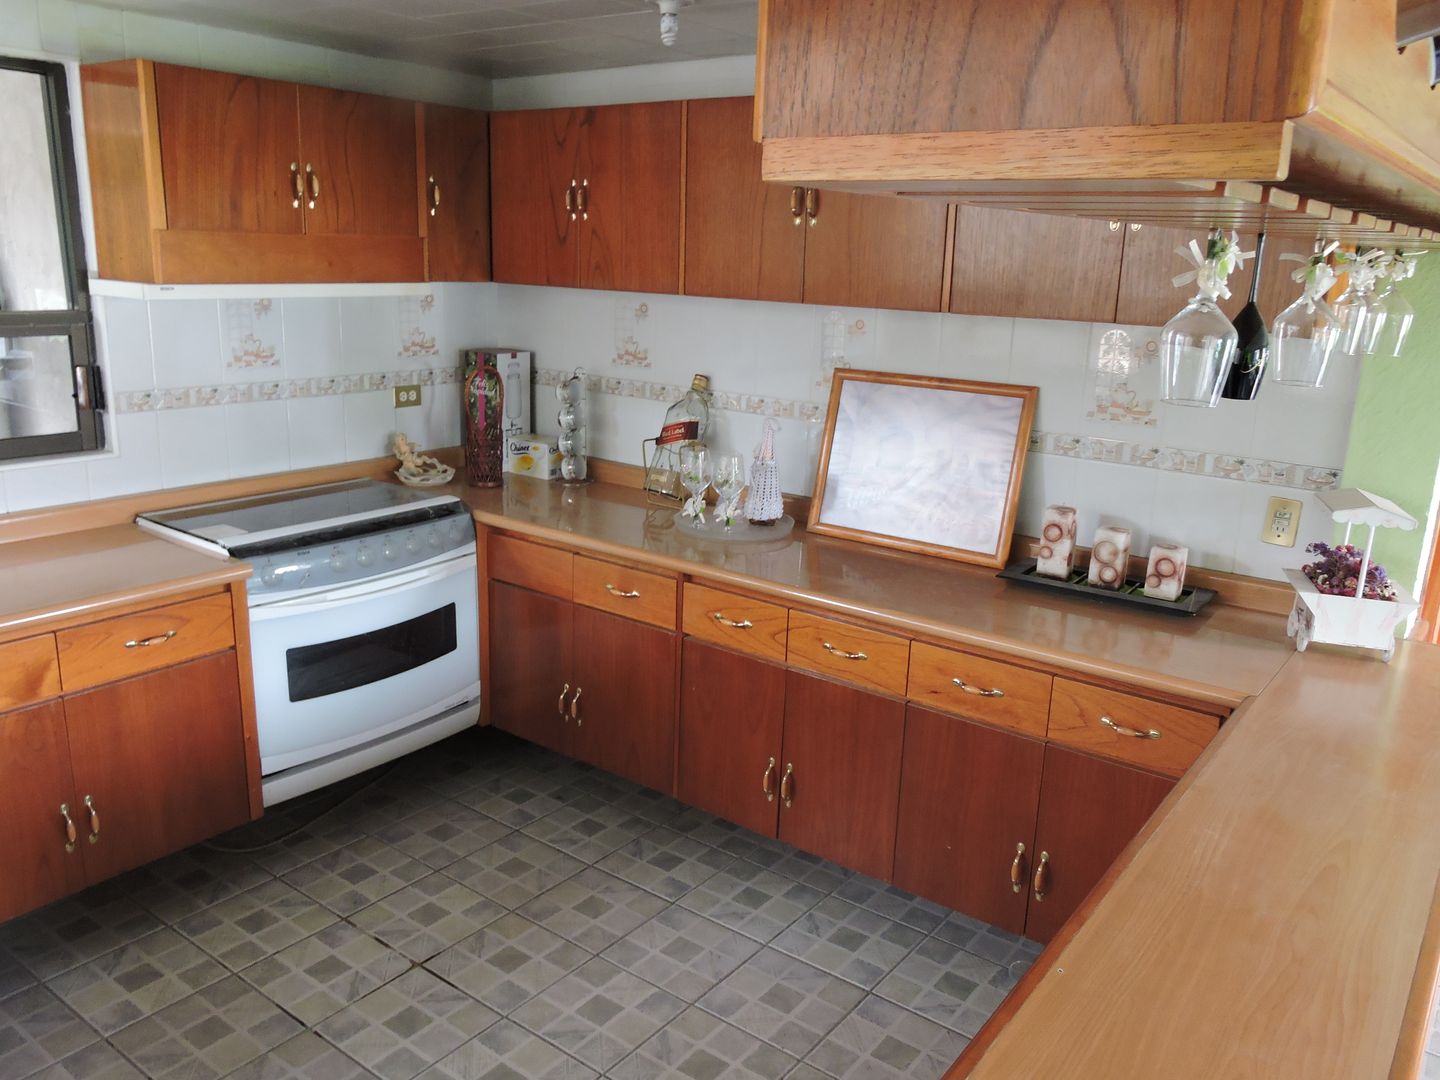 Barra, Cantina y Puertas de cocina en madera., La Casa del Diseño La Casa del Diseño Cucina moderna Legno Effetto legno